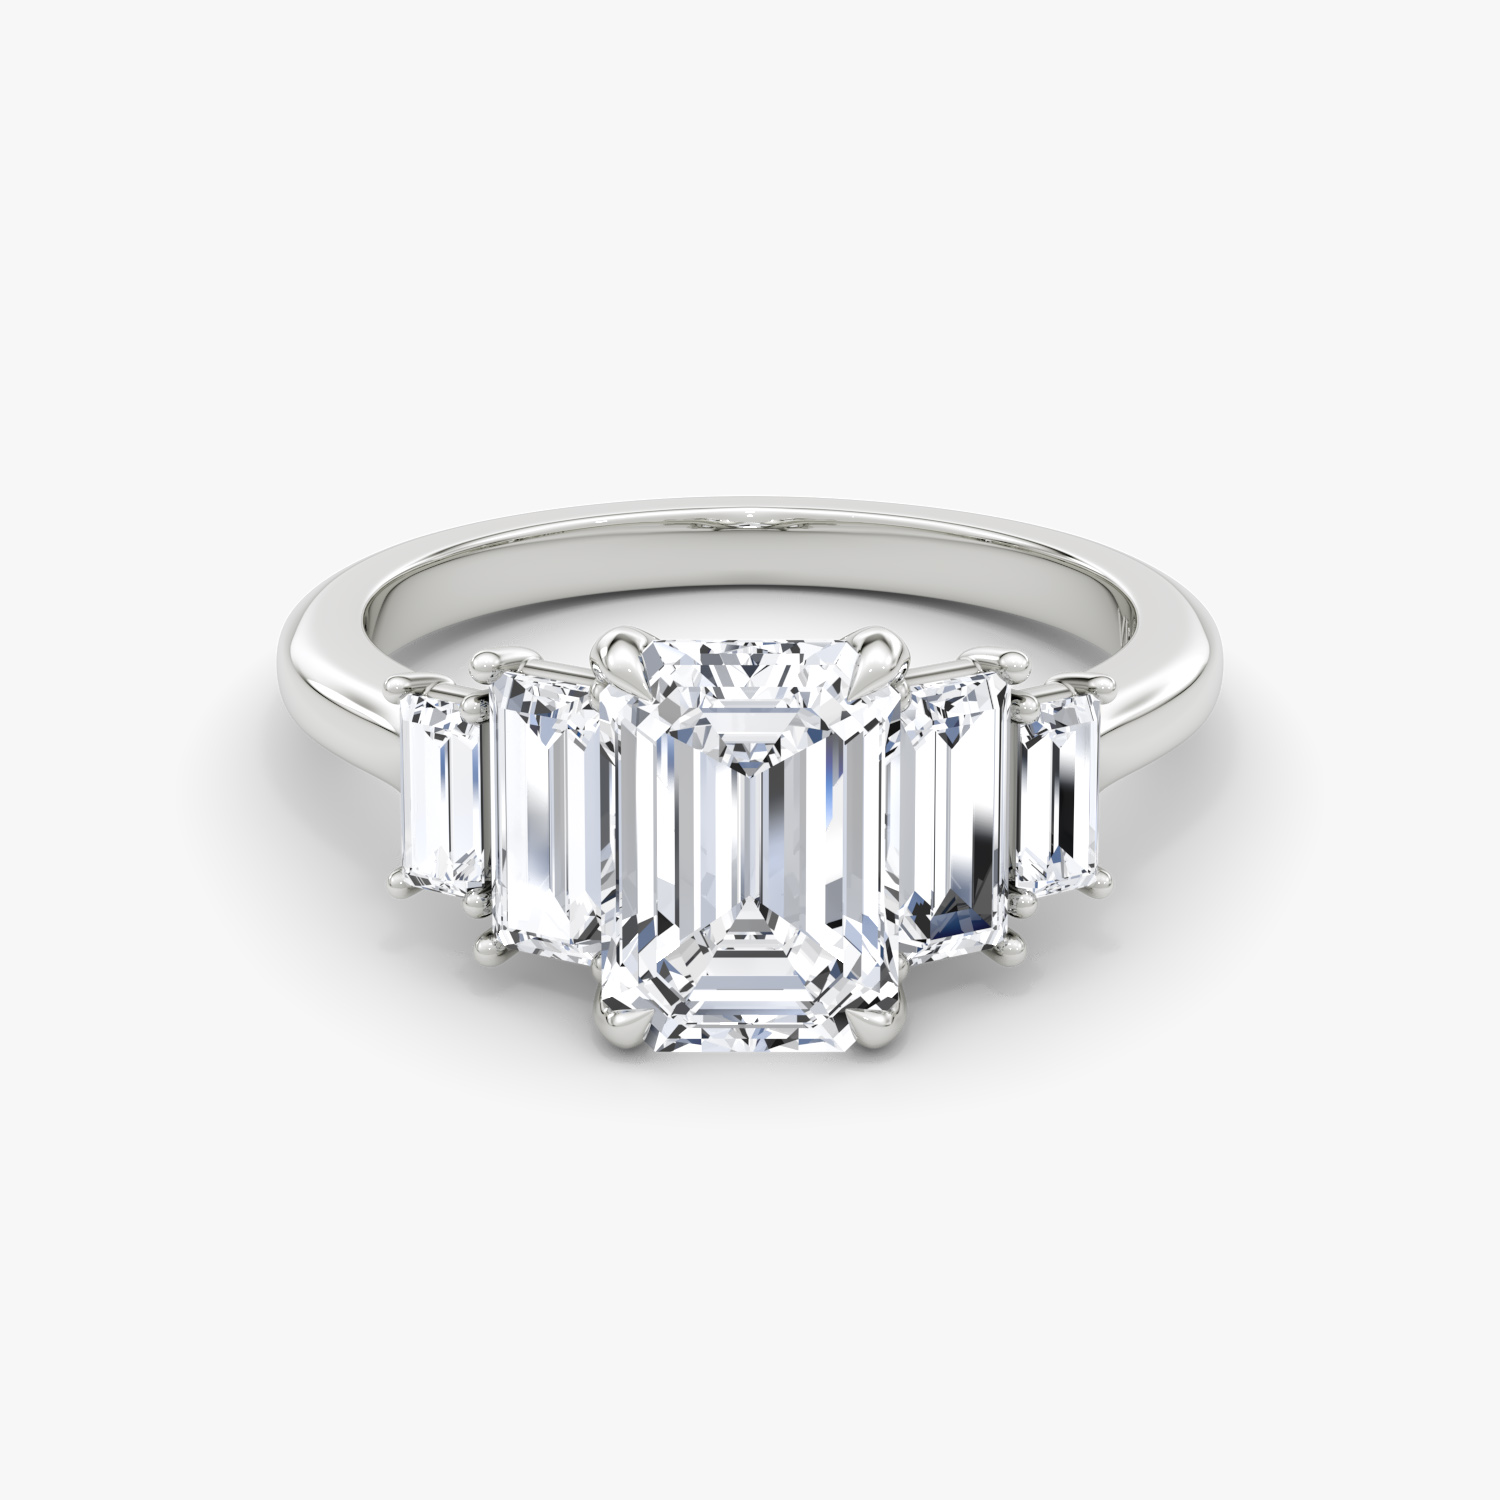 Platinum Rings | Buy 50+ Platinum Ring Designs Online In India |